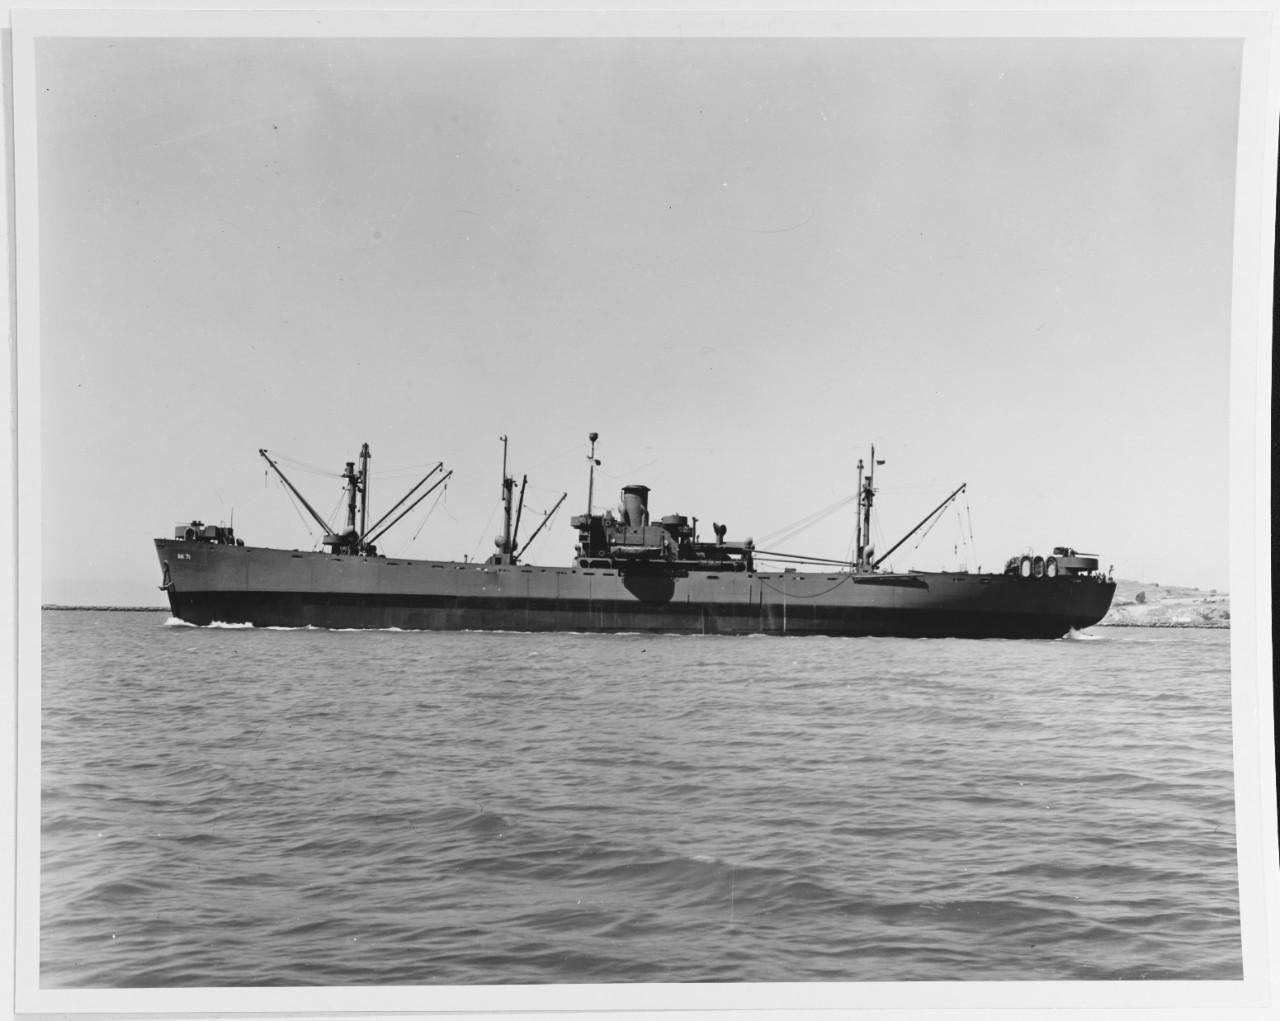 USS ADHARA (AK-71)